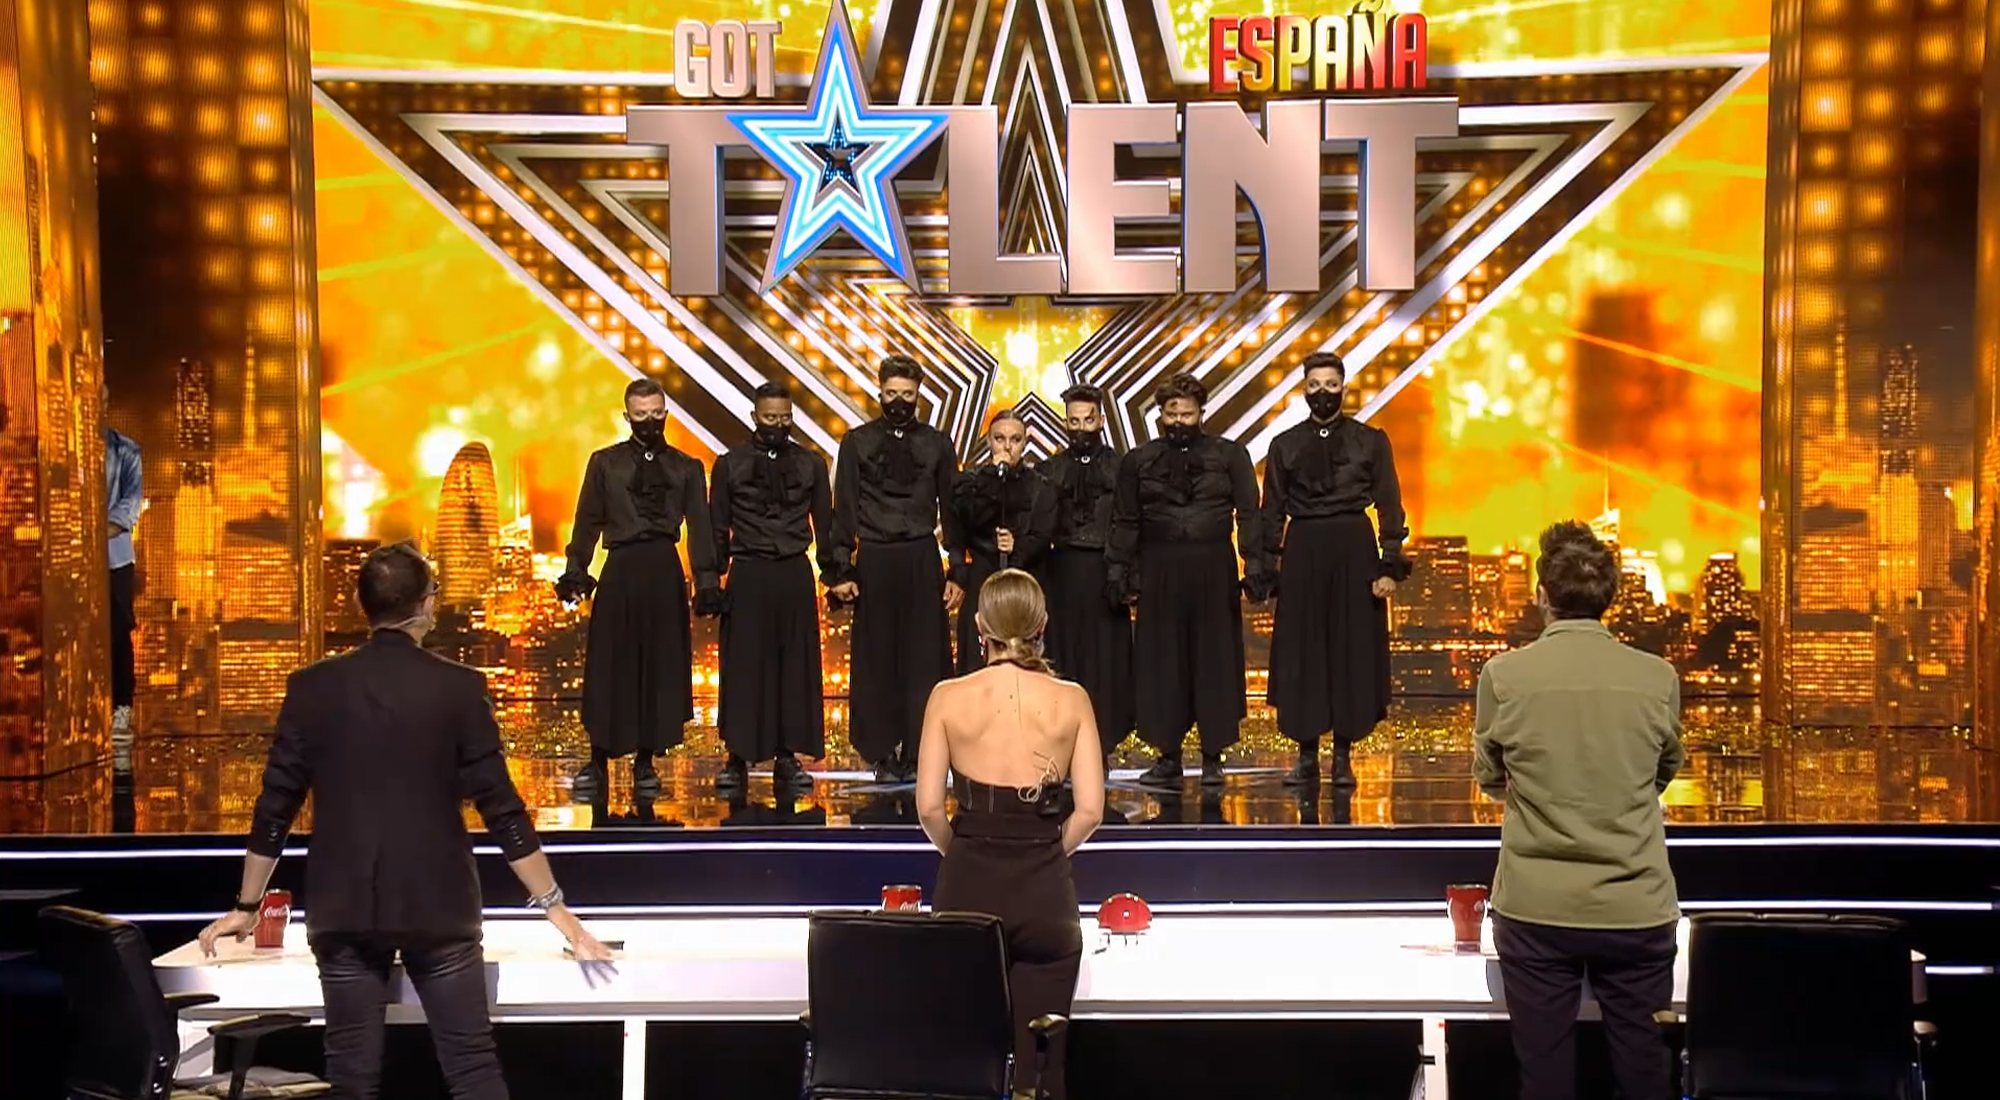 El grupo de baile Immortals Corporation, tras recibir el Pase de Oro en 'Got Talent'